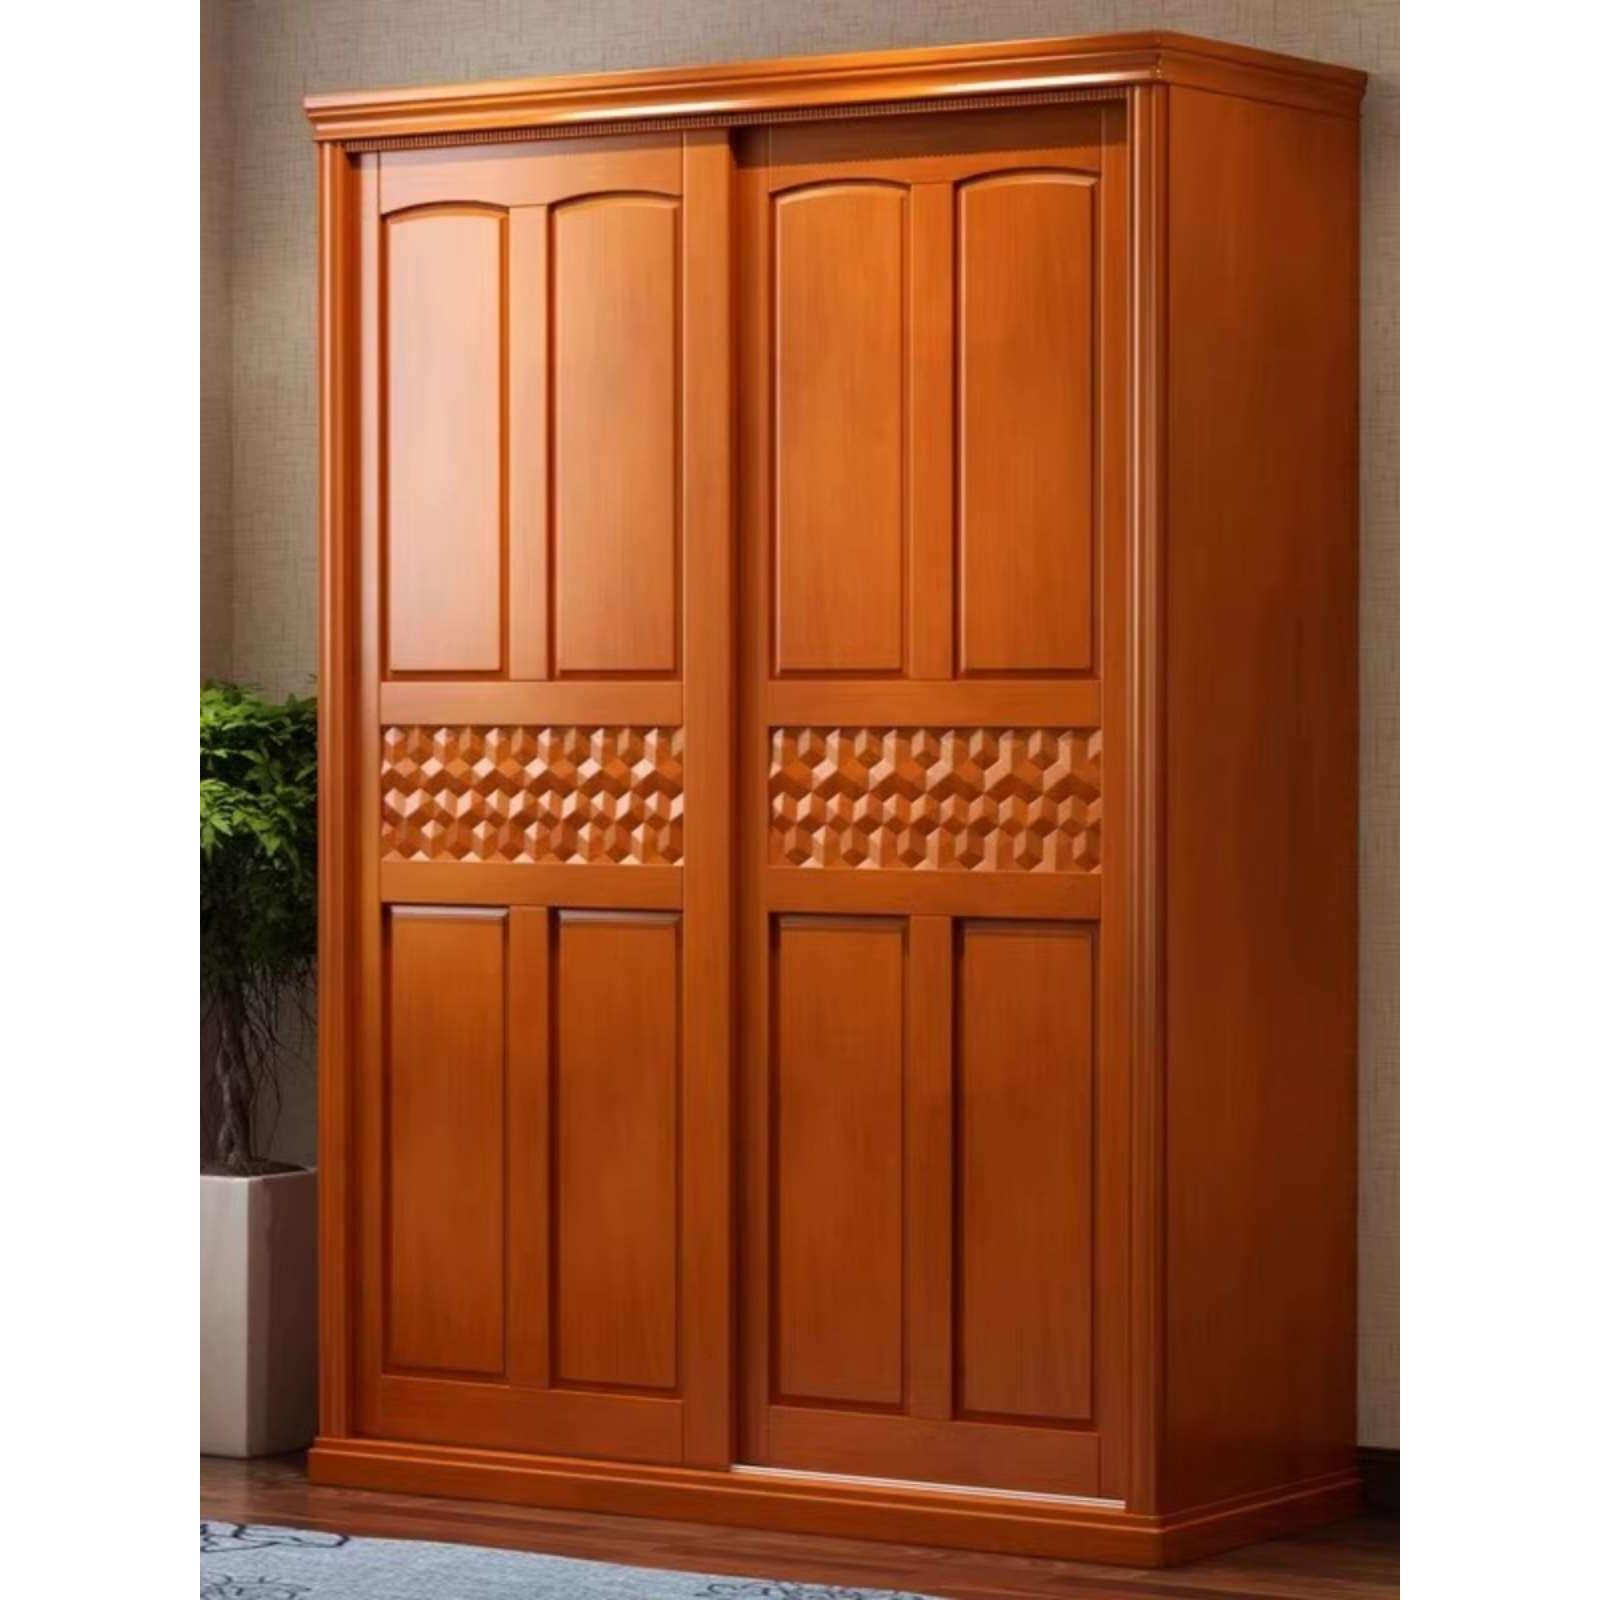 中式实木衣柜全实木现代简约卧室家用对开门储物柜组合大衣橱家具